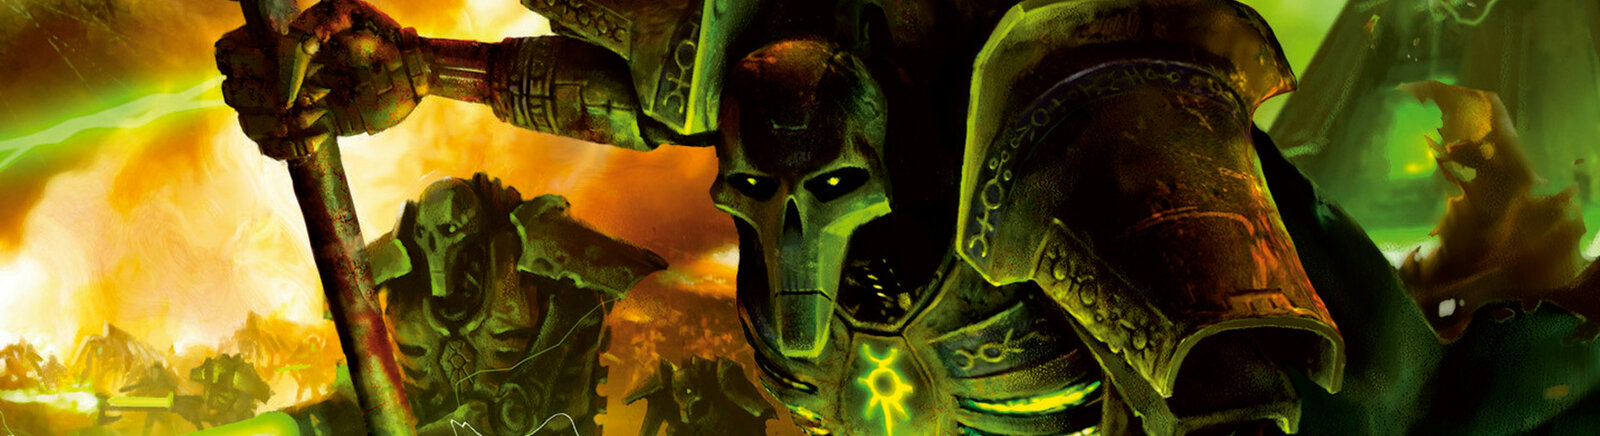 Дата выхода Warhammer 40,000: Dawn of War - Dark Crusade  на PC в России и во всем мире